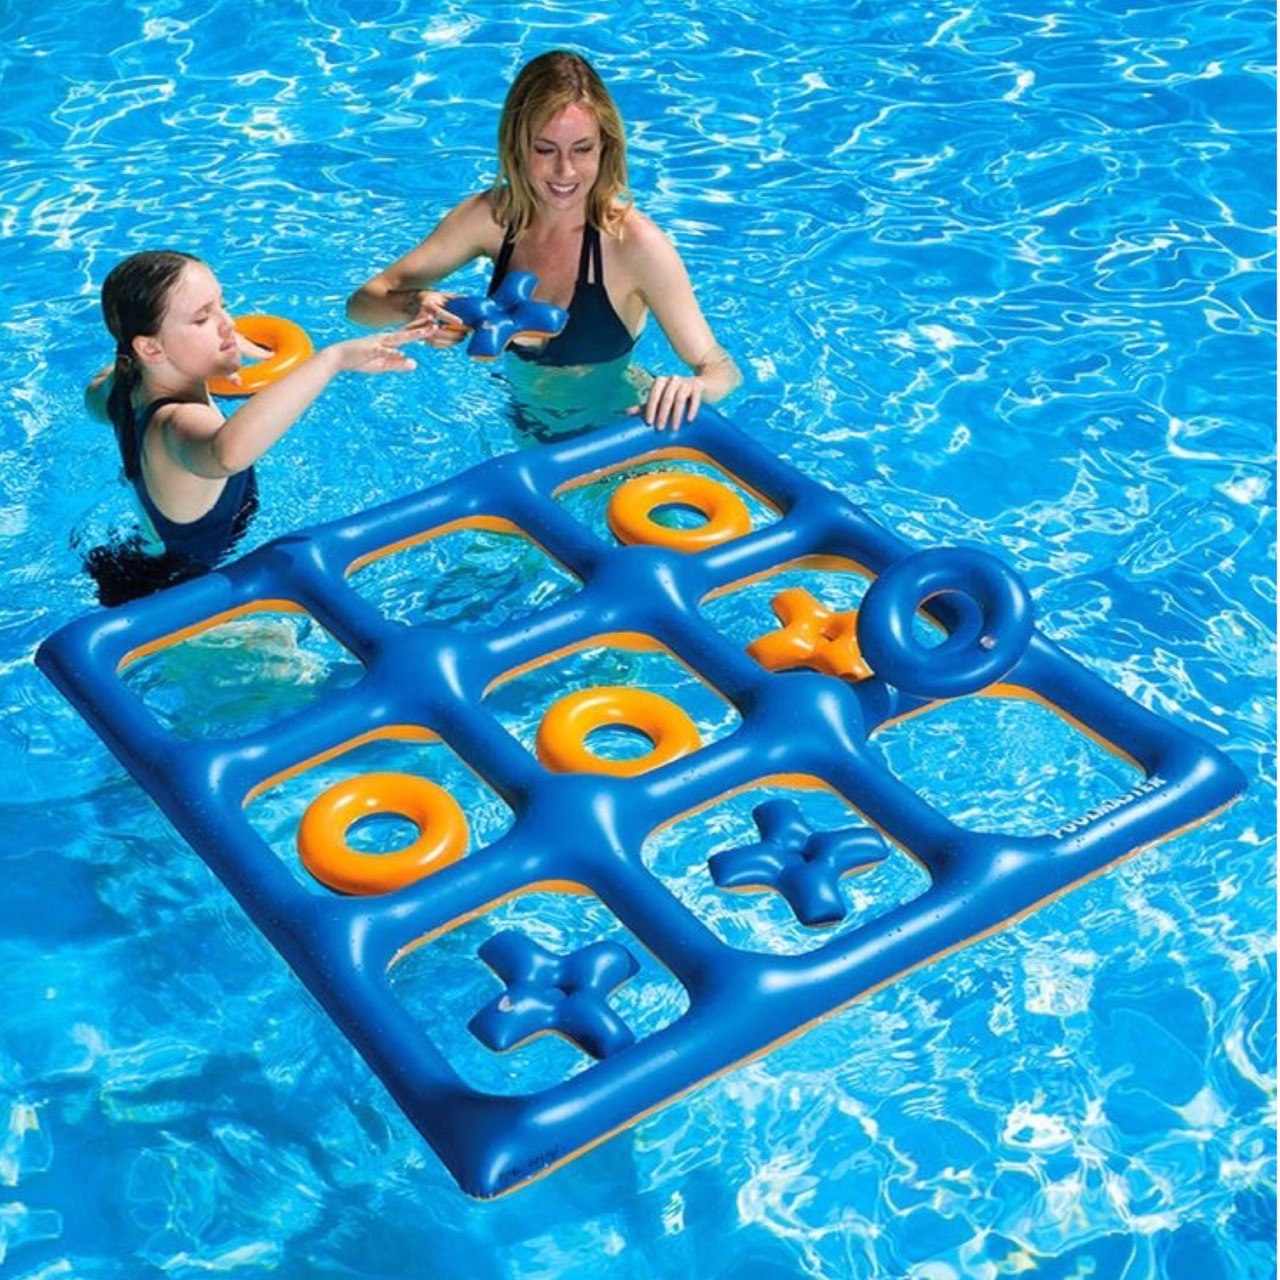 Во что поиграть вдвоем с сестрой. Инвентарь для купания. Игрушки для бассейна. Игры в бассейне для детей. Игрушки плавающие для бассейна.